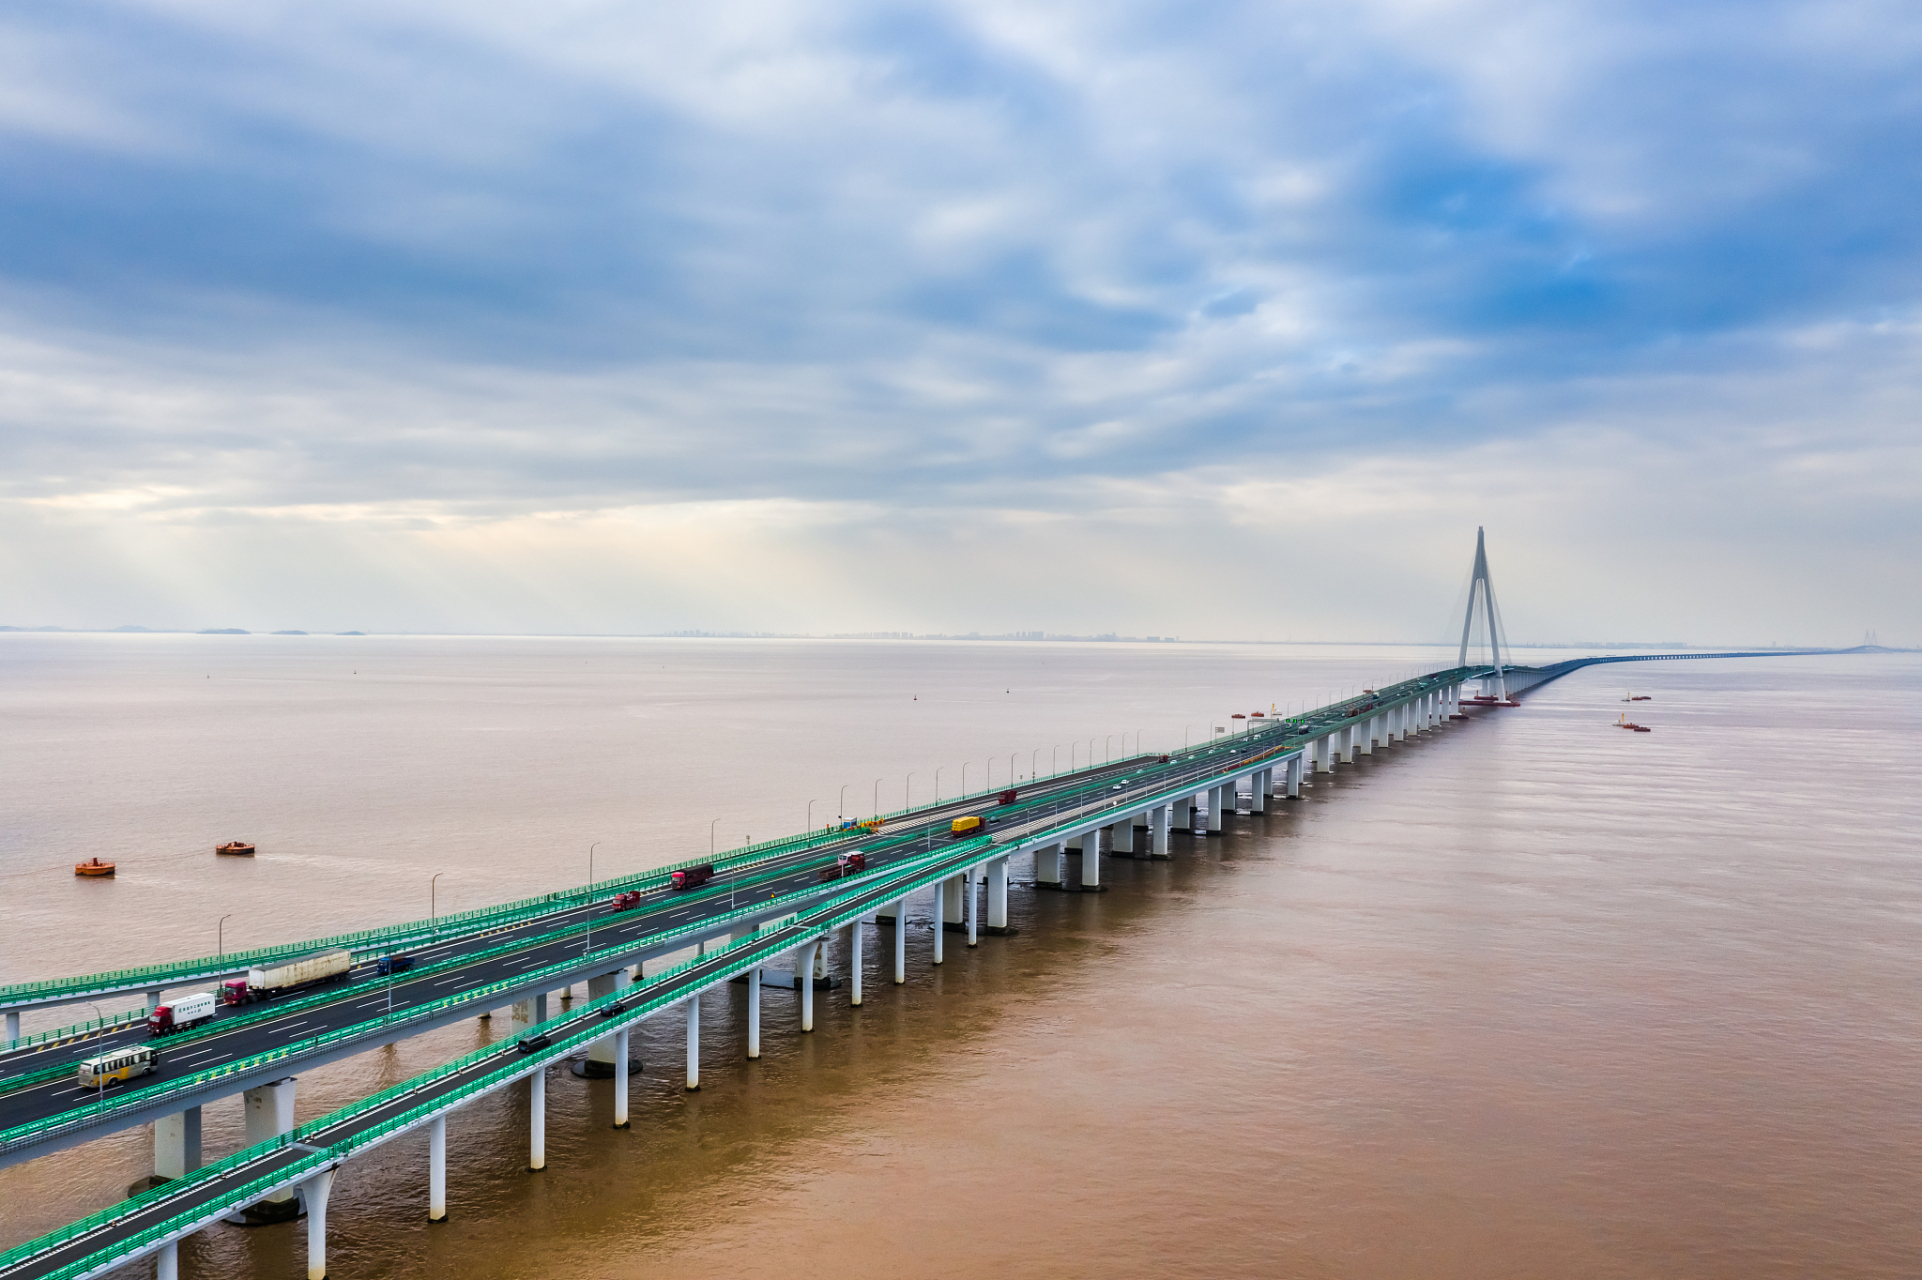 杭州湾跨海大桥的简介  当提到杭州湾跨海大桥,这座连接上海与宁波的